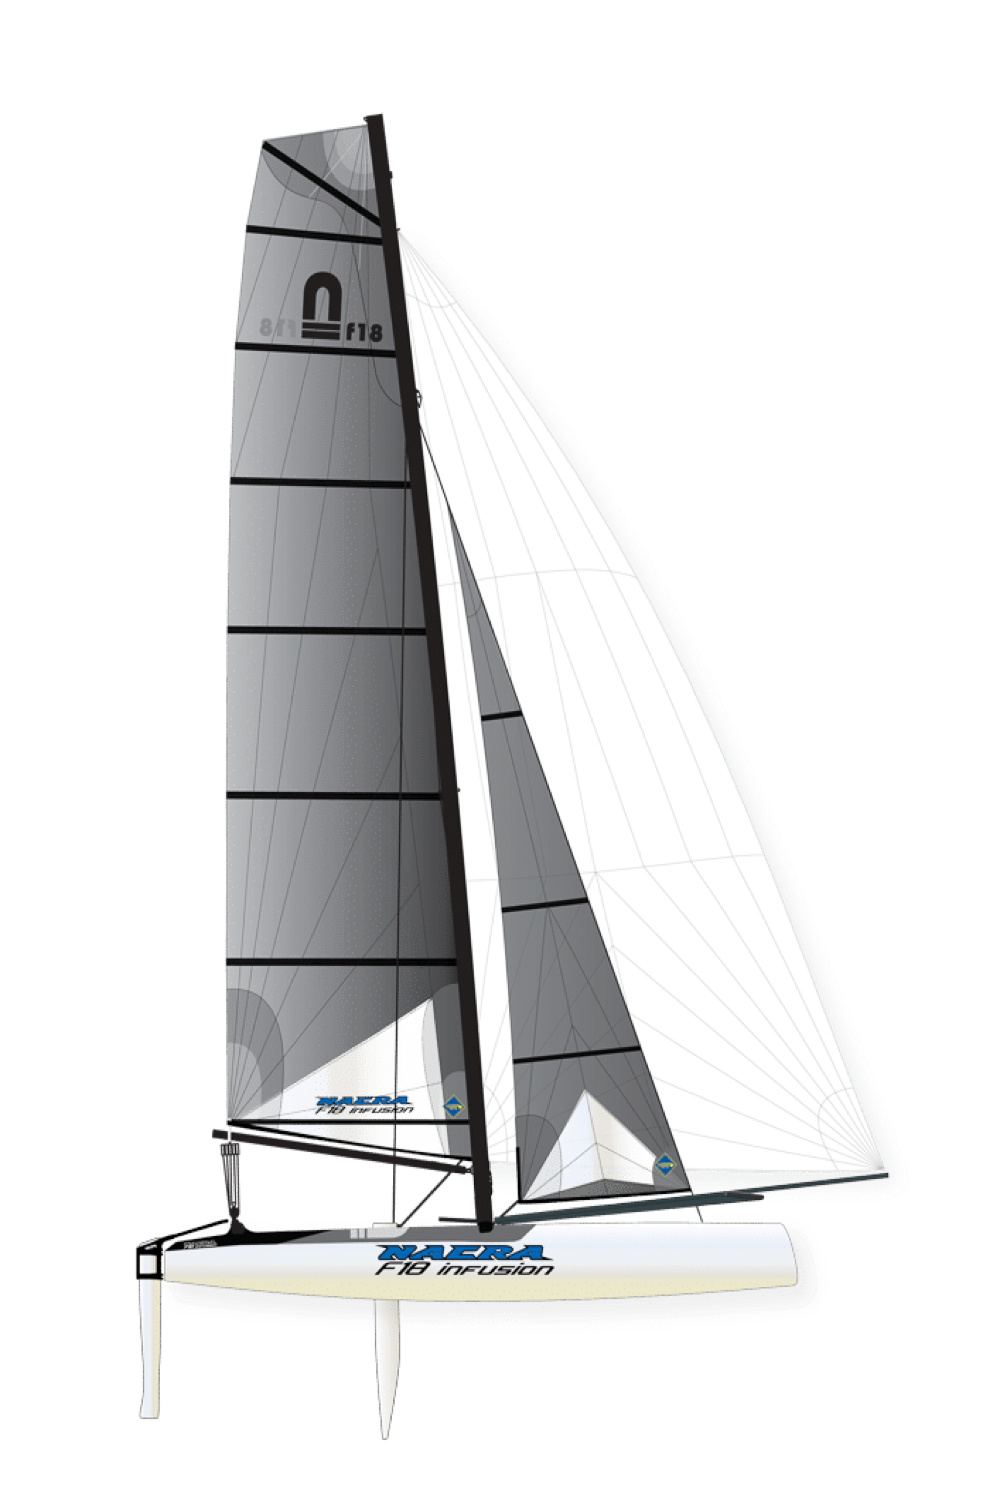 f18 catamaran for sale uk